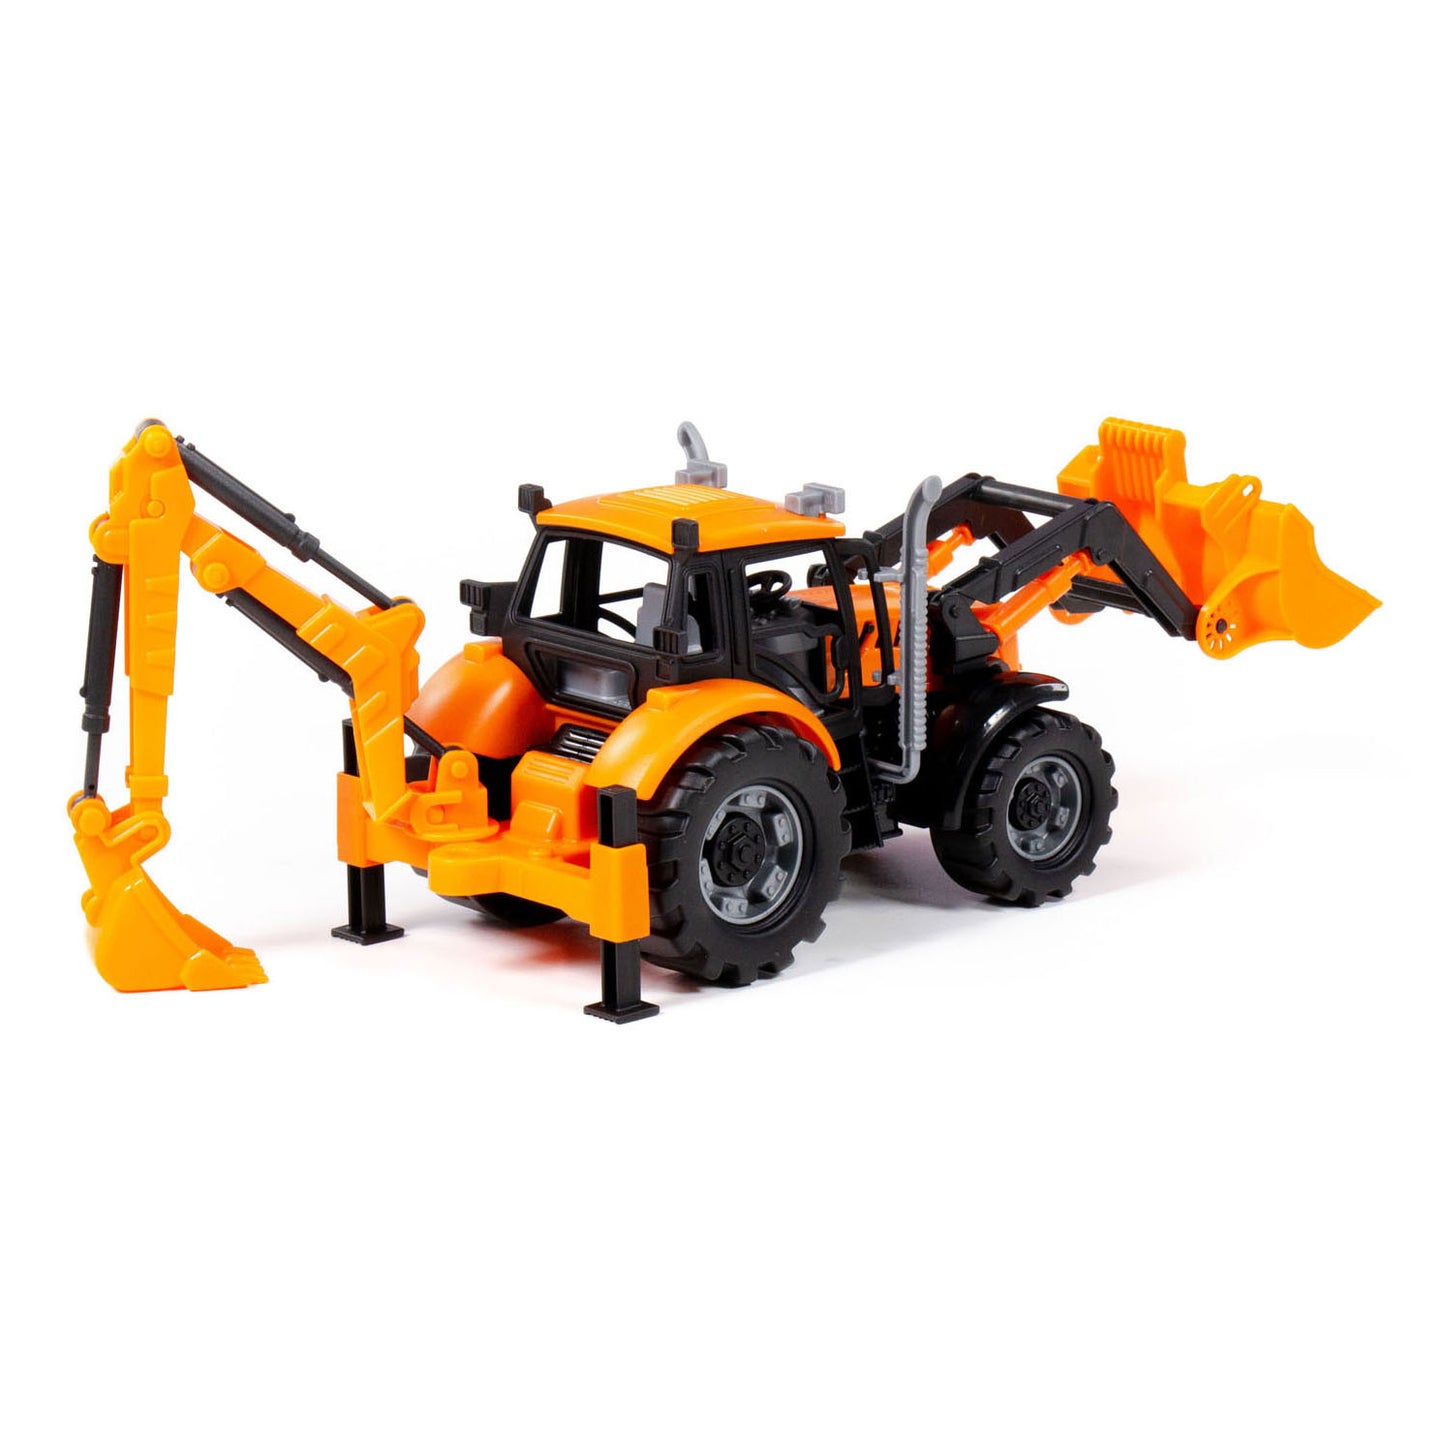 Cavallino Toys Tractor Cavallino con cargador y excavadora amarillo, escala 1:32